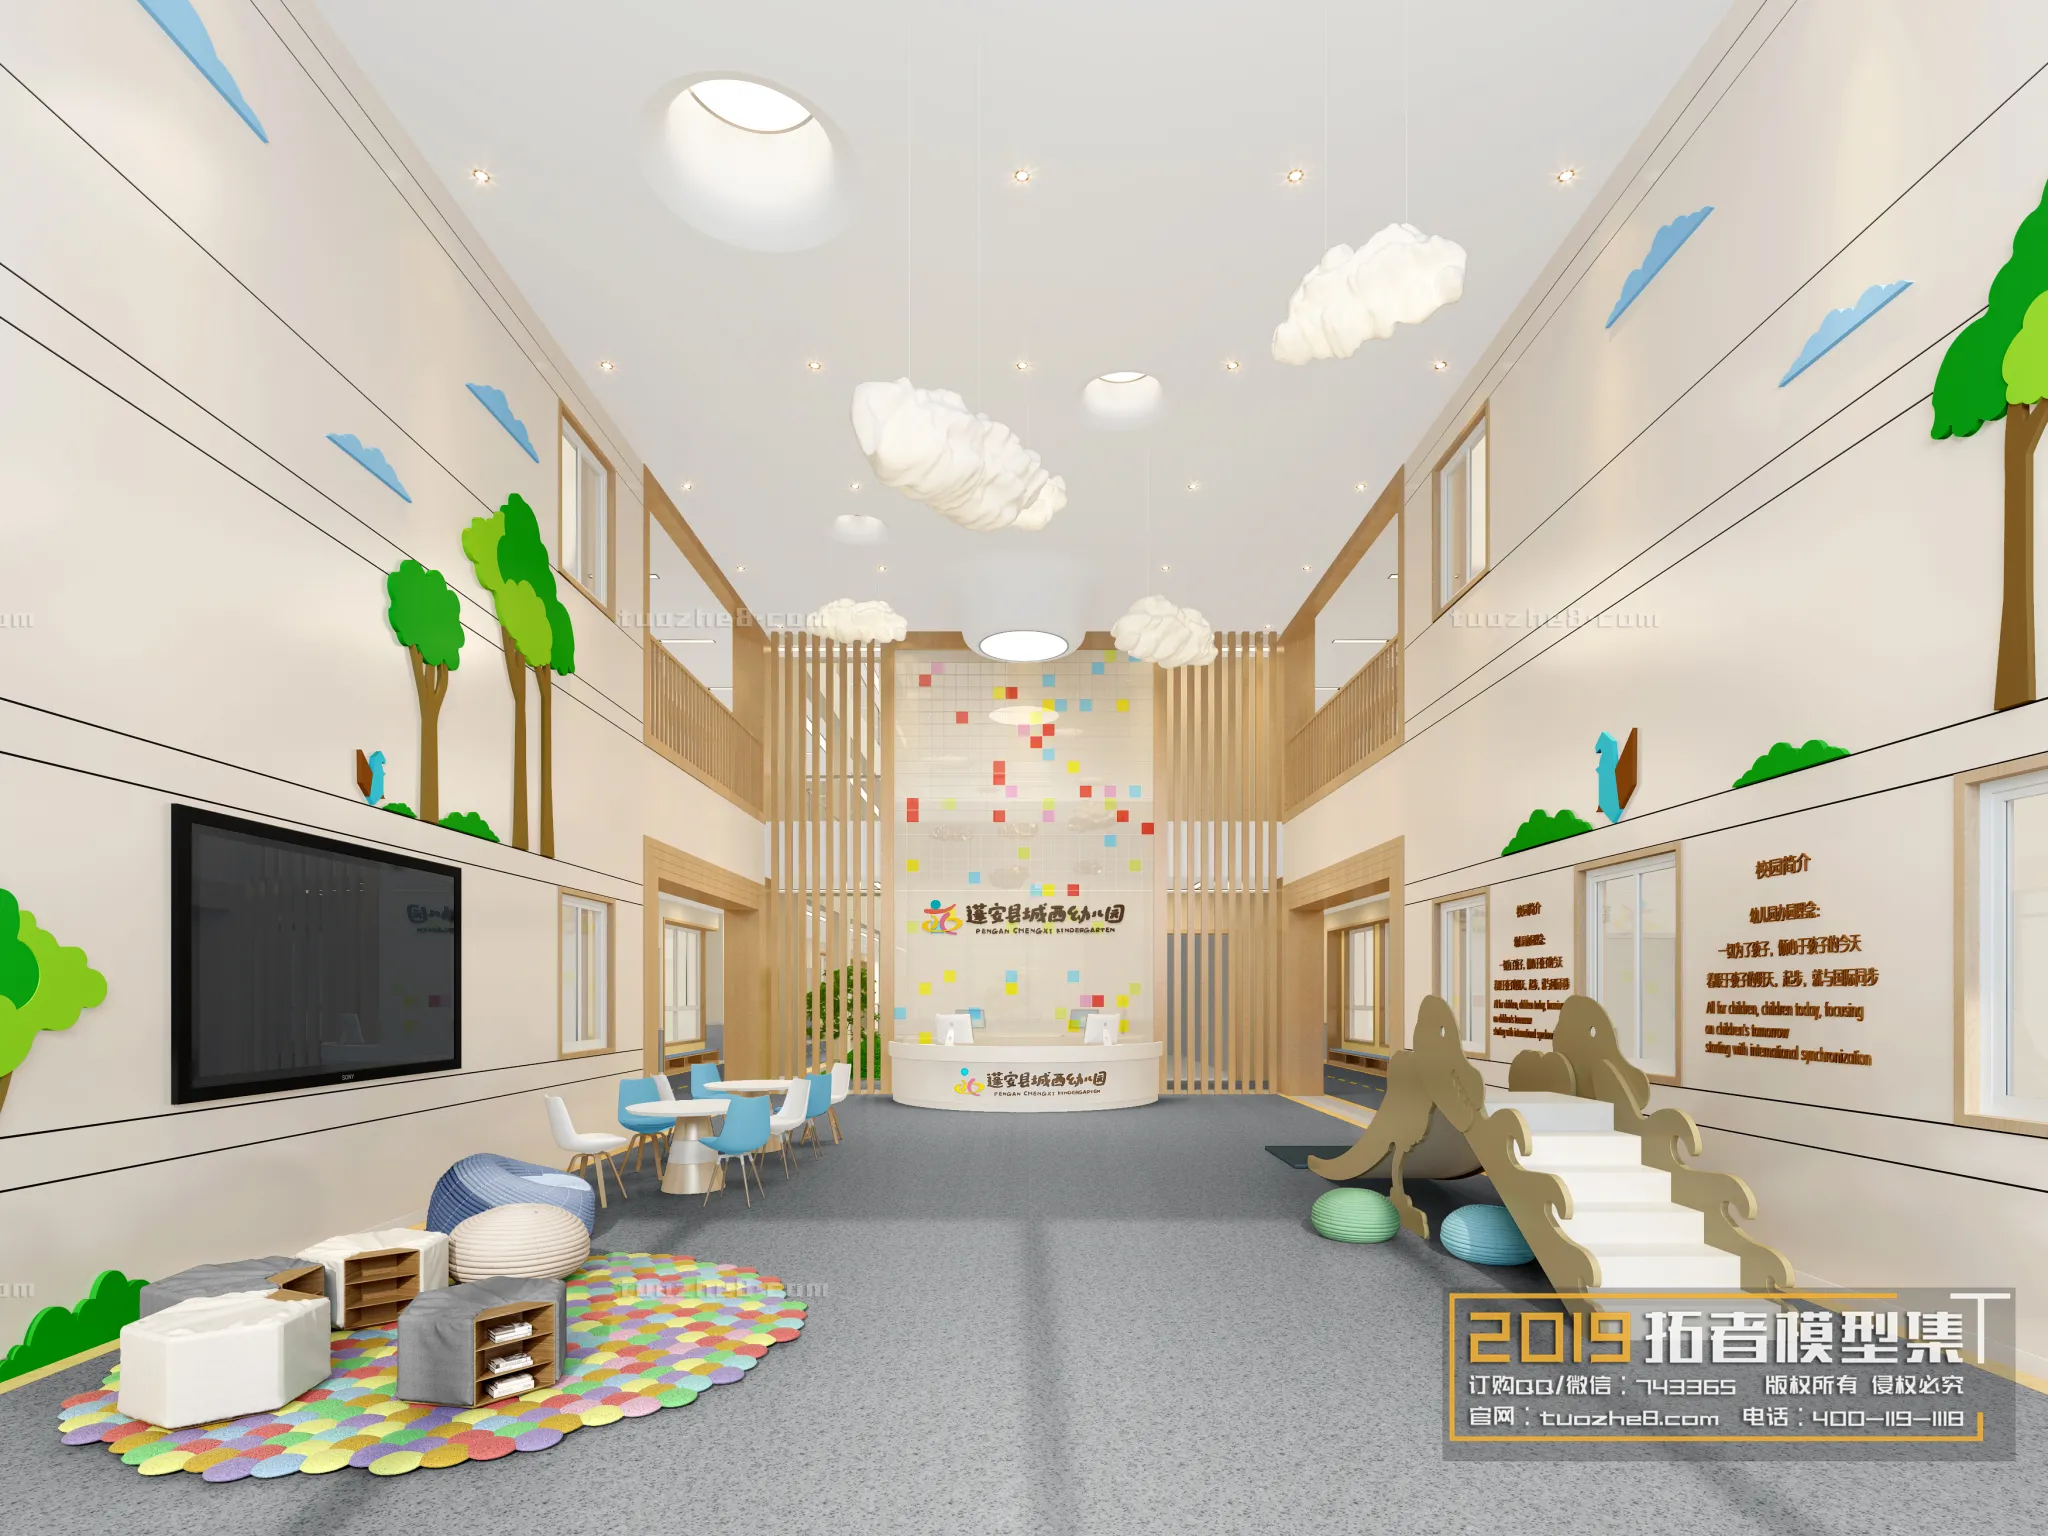 Extension Interior – KINDERGARTEN SCHOOL – 012